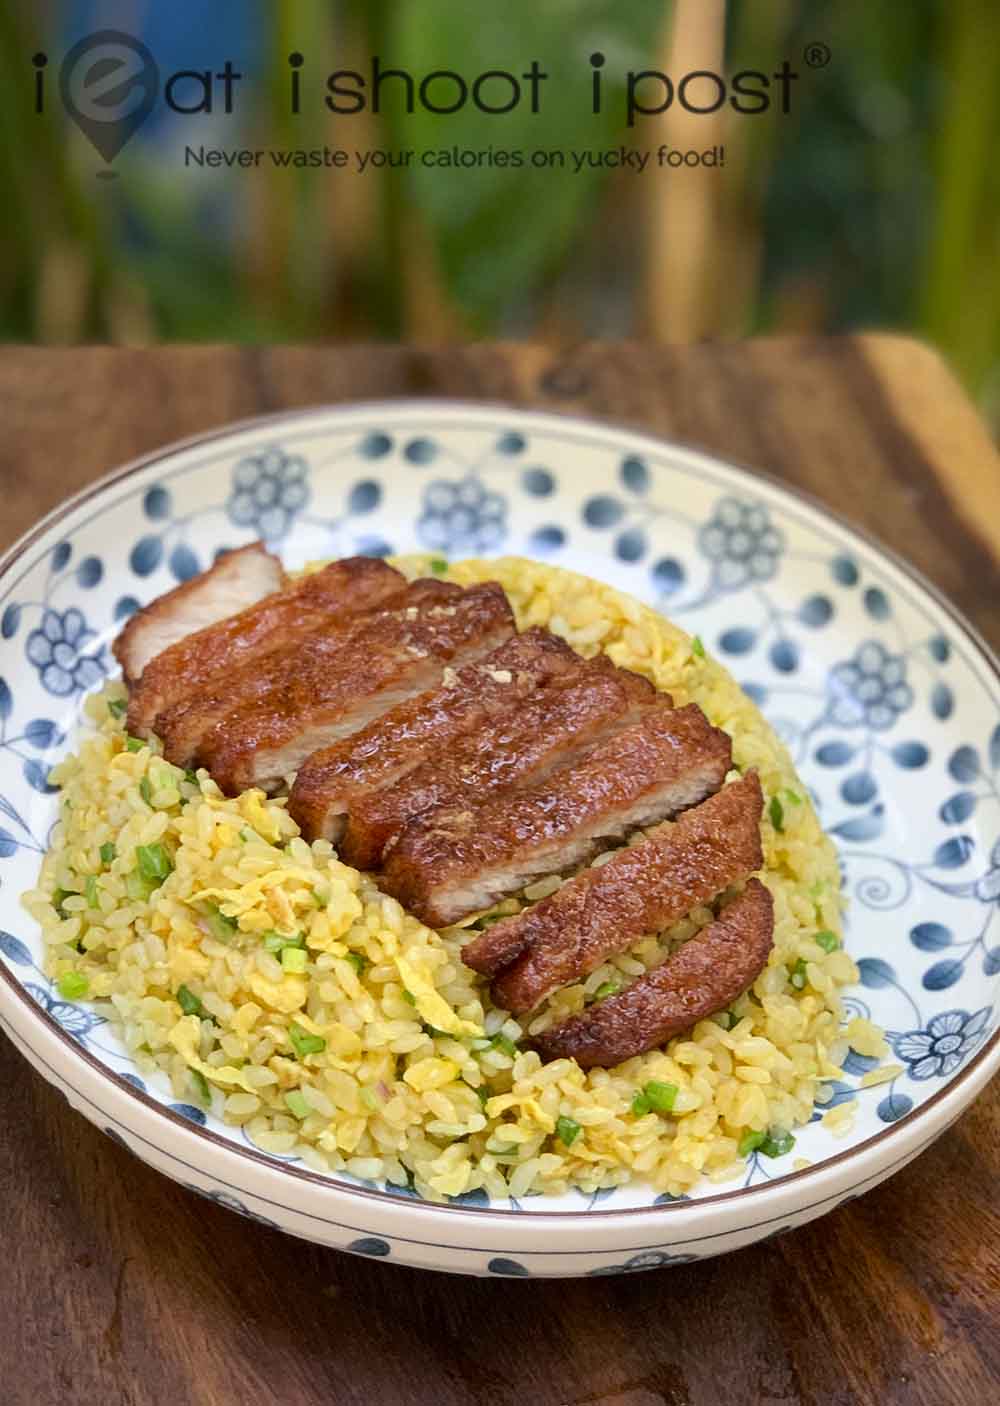 Din Tai Fung Pork Chop Recipe - Find Vegetarian Recipes